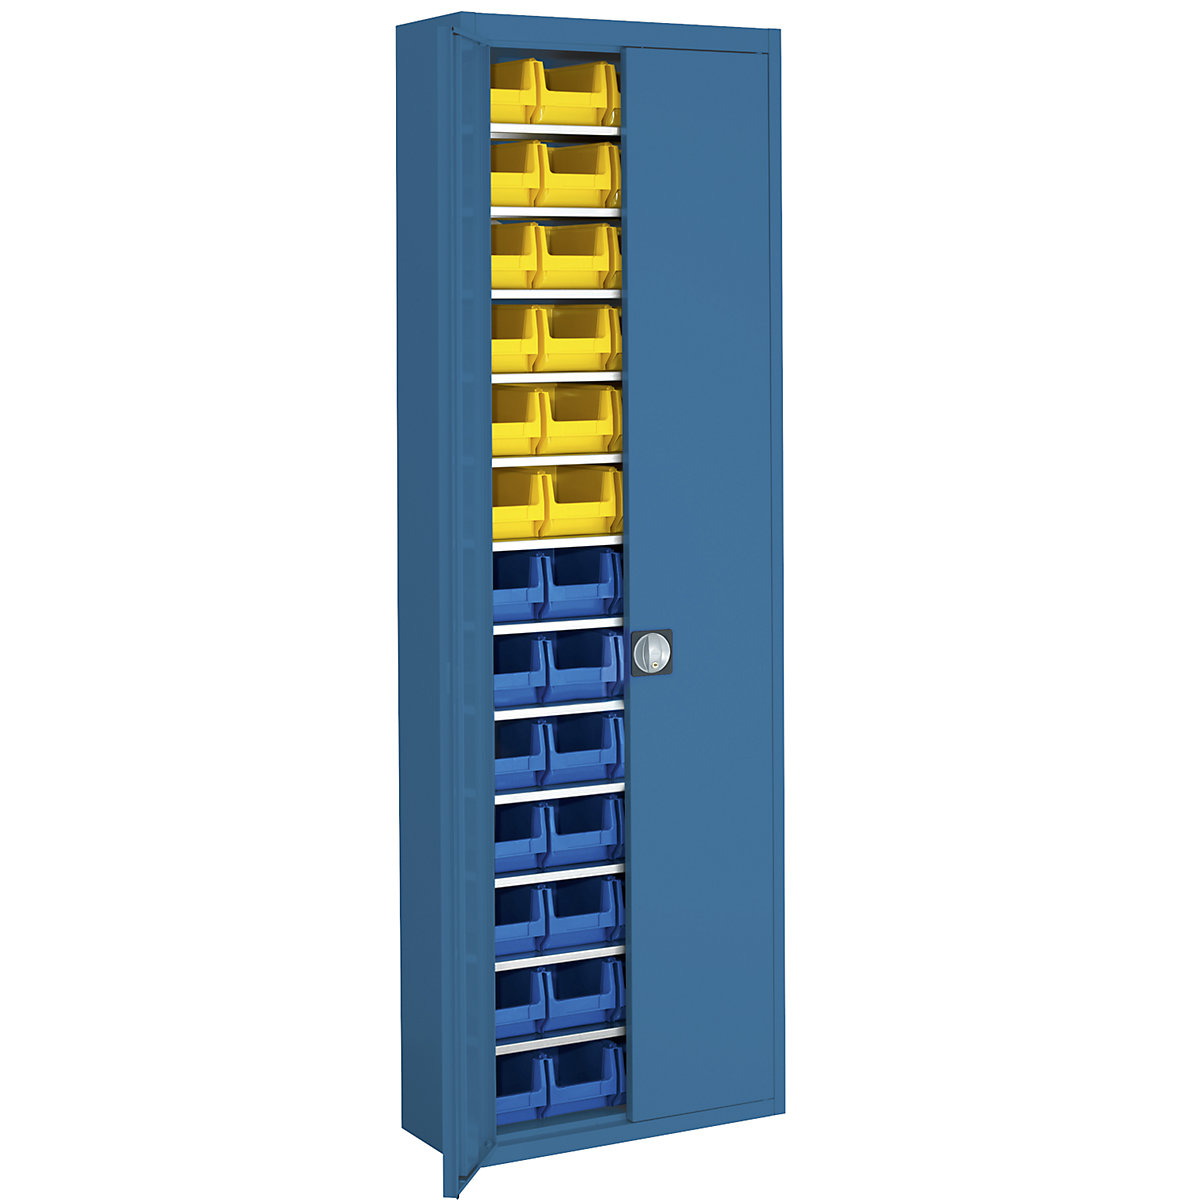 Skladová skříň s přepravkami s viditelným obsahem – mauser, v x š x h 2150 x 680 x 280 mm, jednobarevné, modrá, 52 přepravek-12